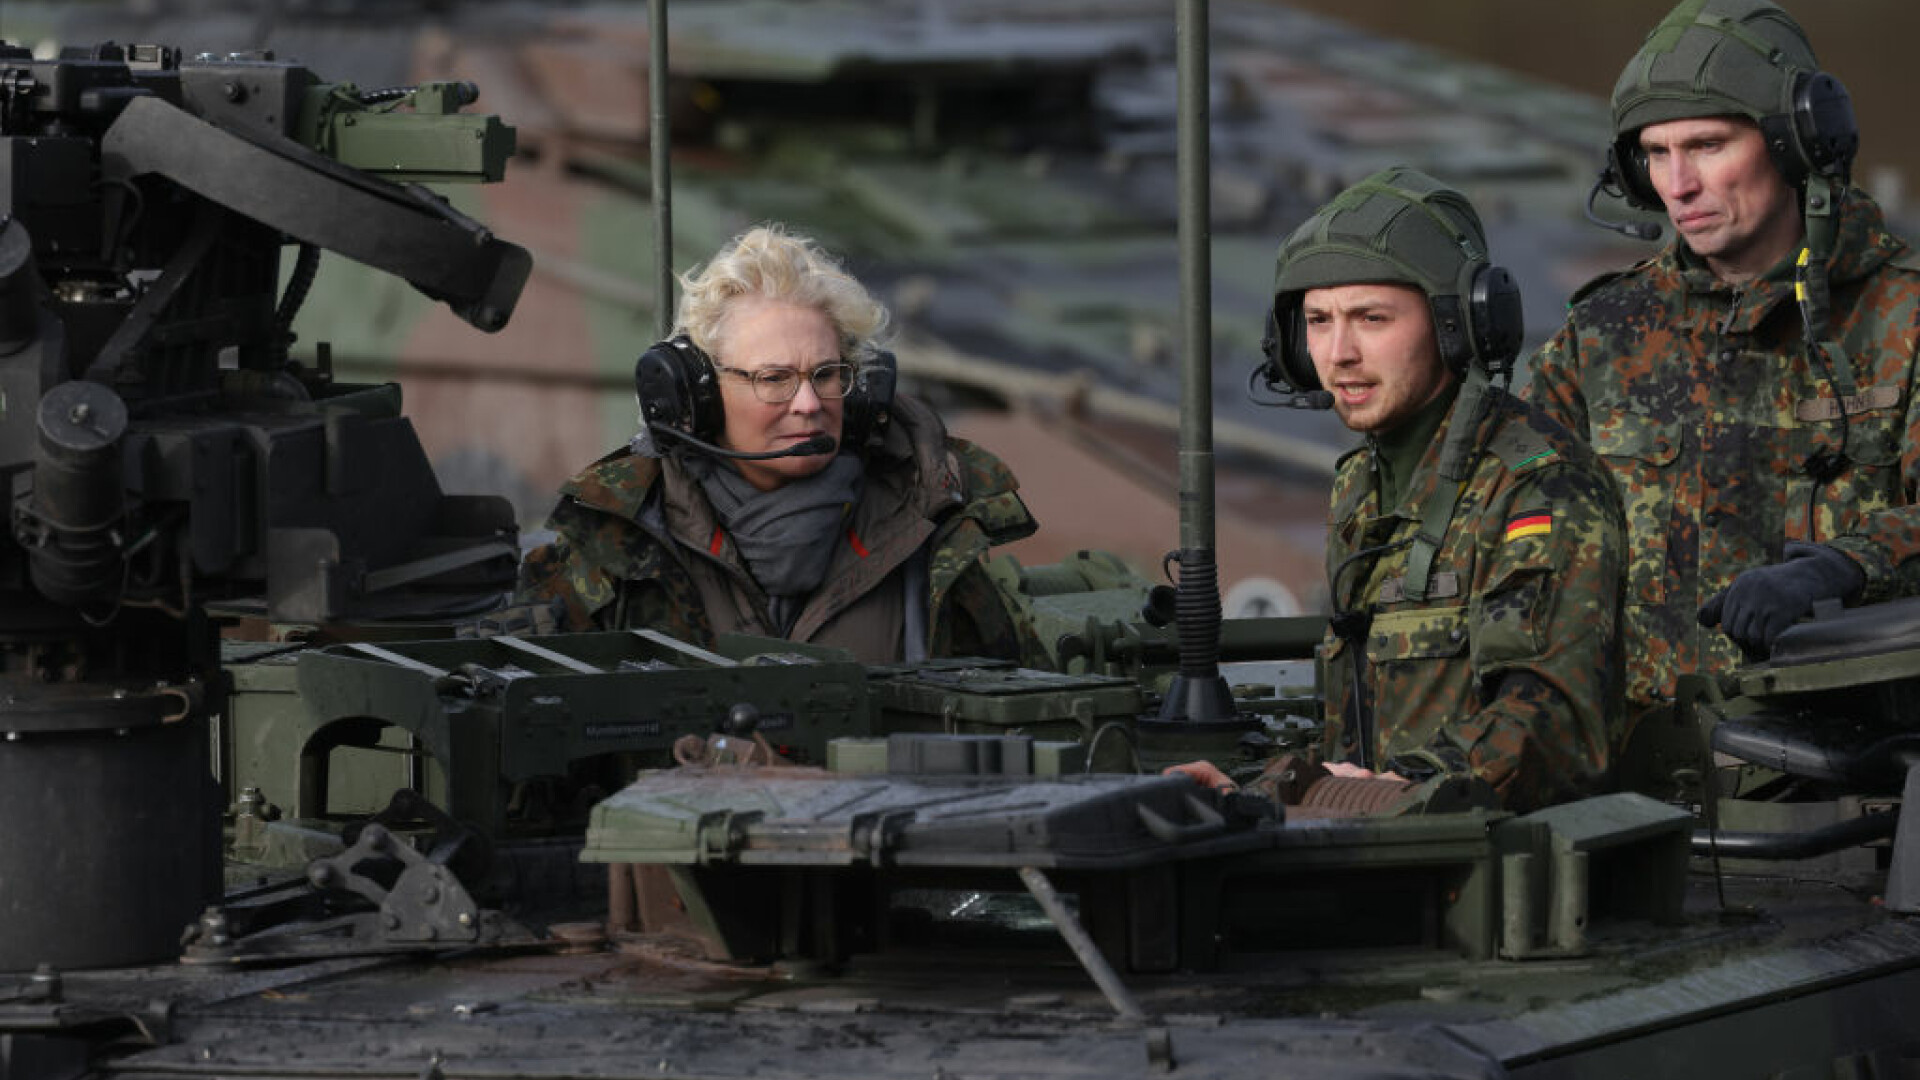 Ministrul german al Apărării spune că nu mai poate trimite arme Ucrainei pentru că stocurile Bundeswehr sunt la limită